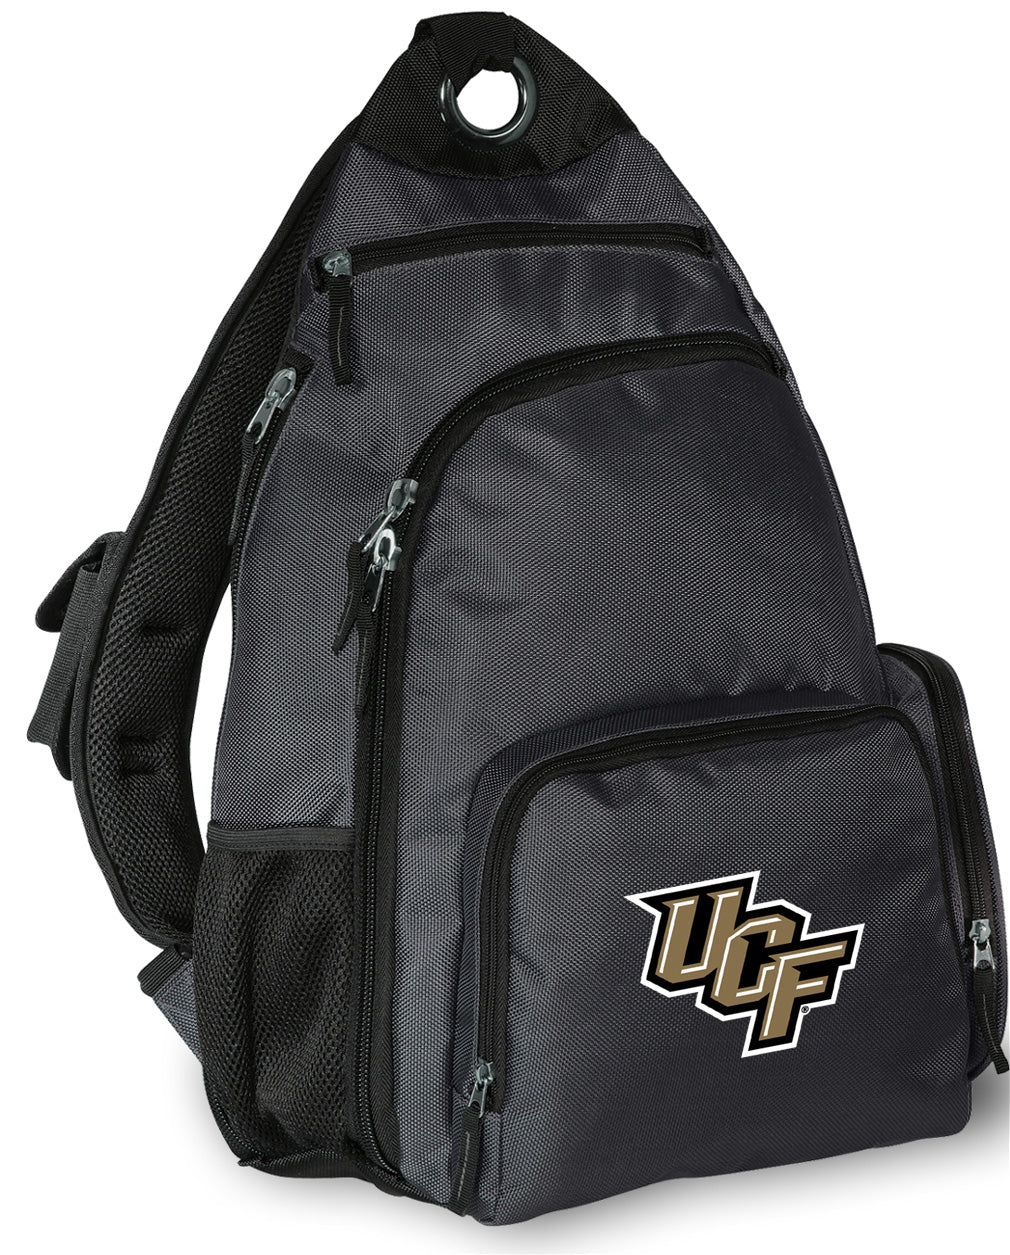 UCF Sling Backpack Central Florida Crossbody Bag